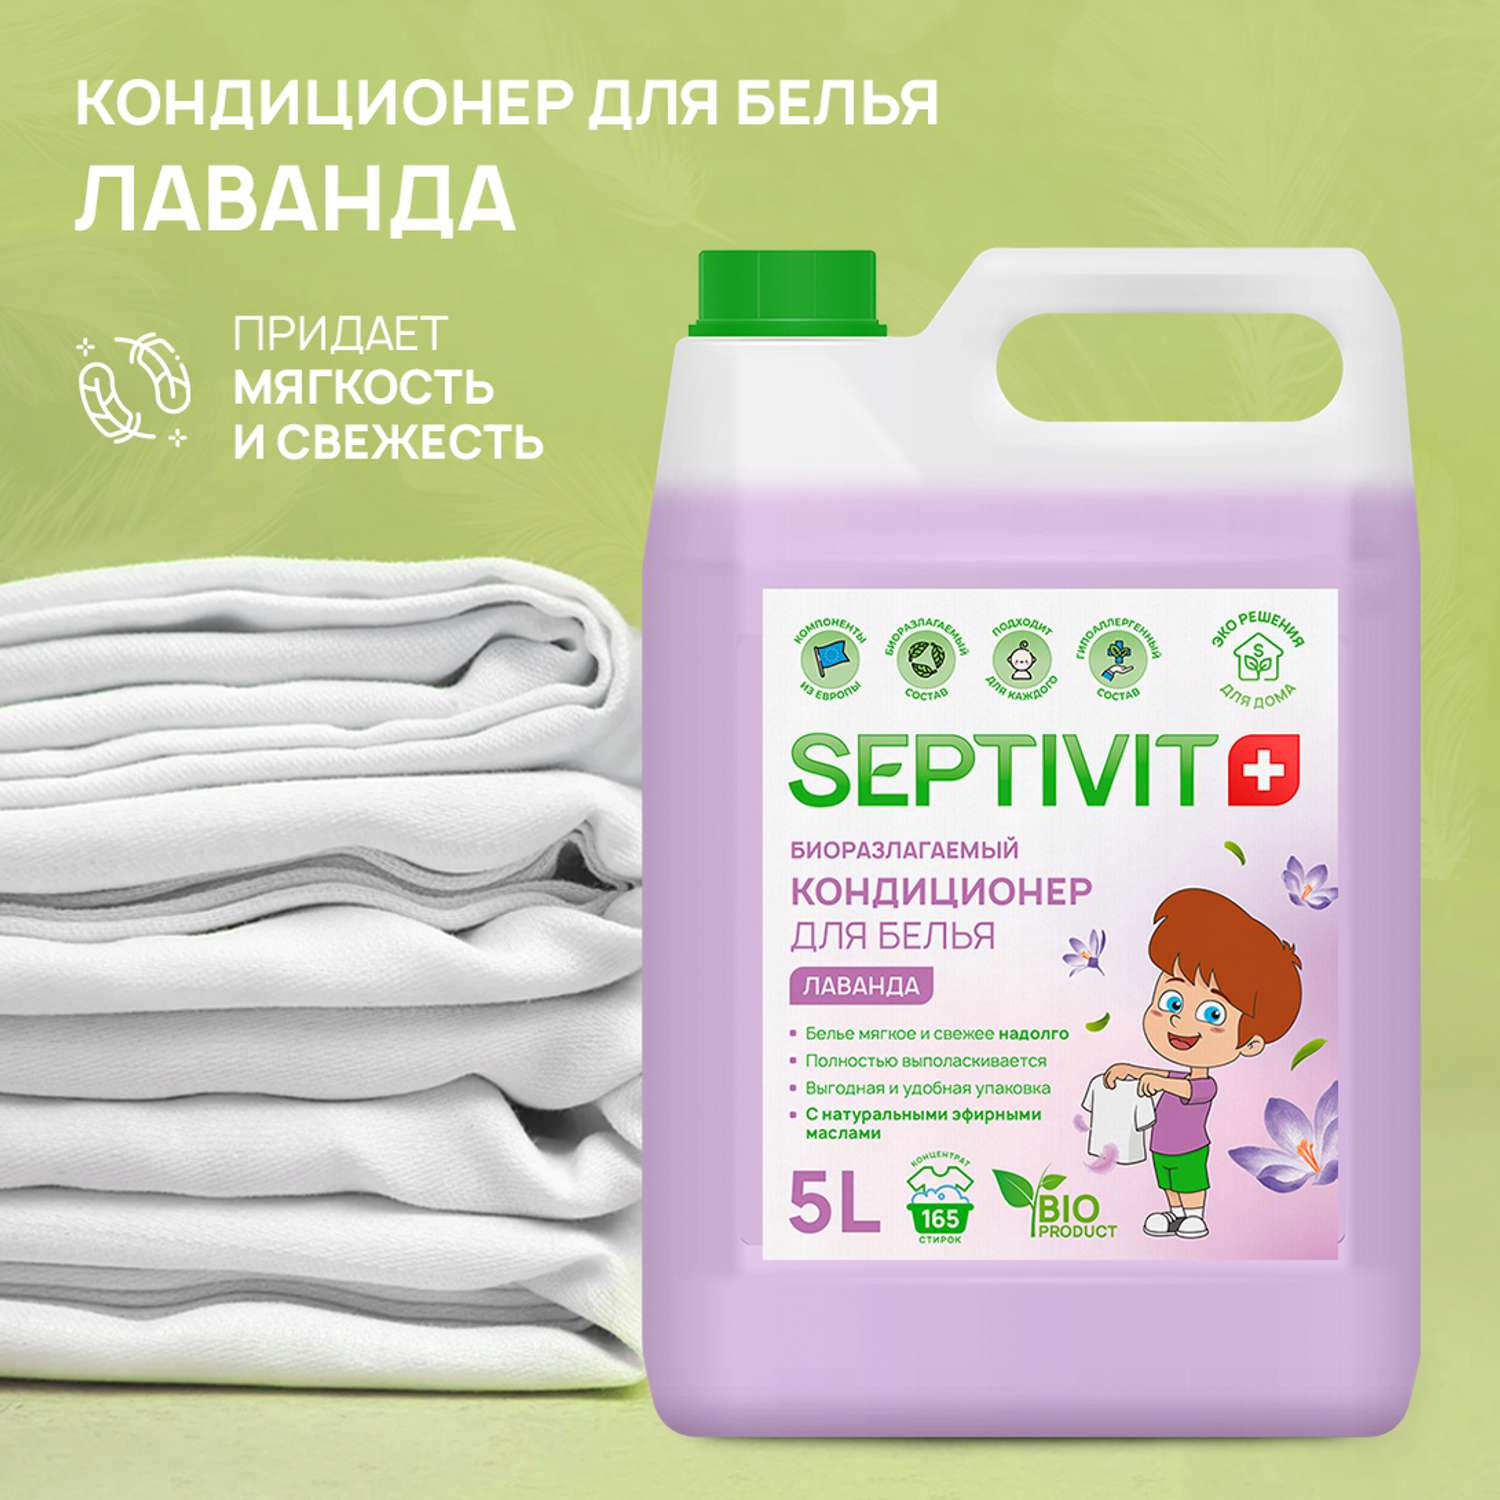 Кондиционер для белья SEPTIVIT Premium 5л с ароматом Лаванда - фото 2